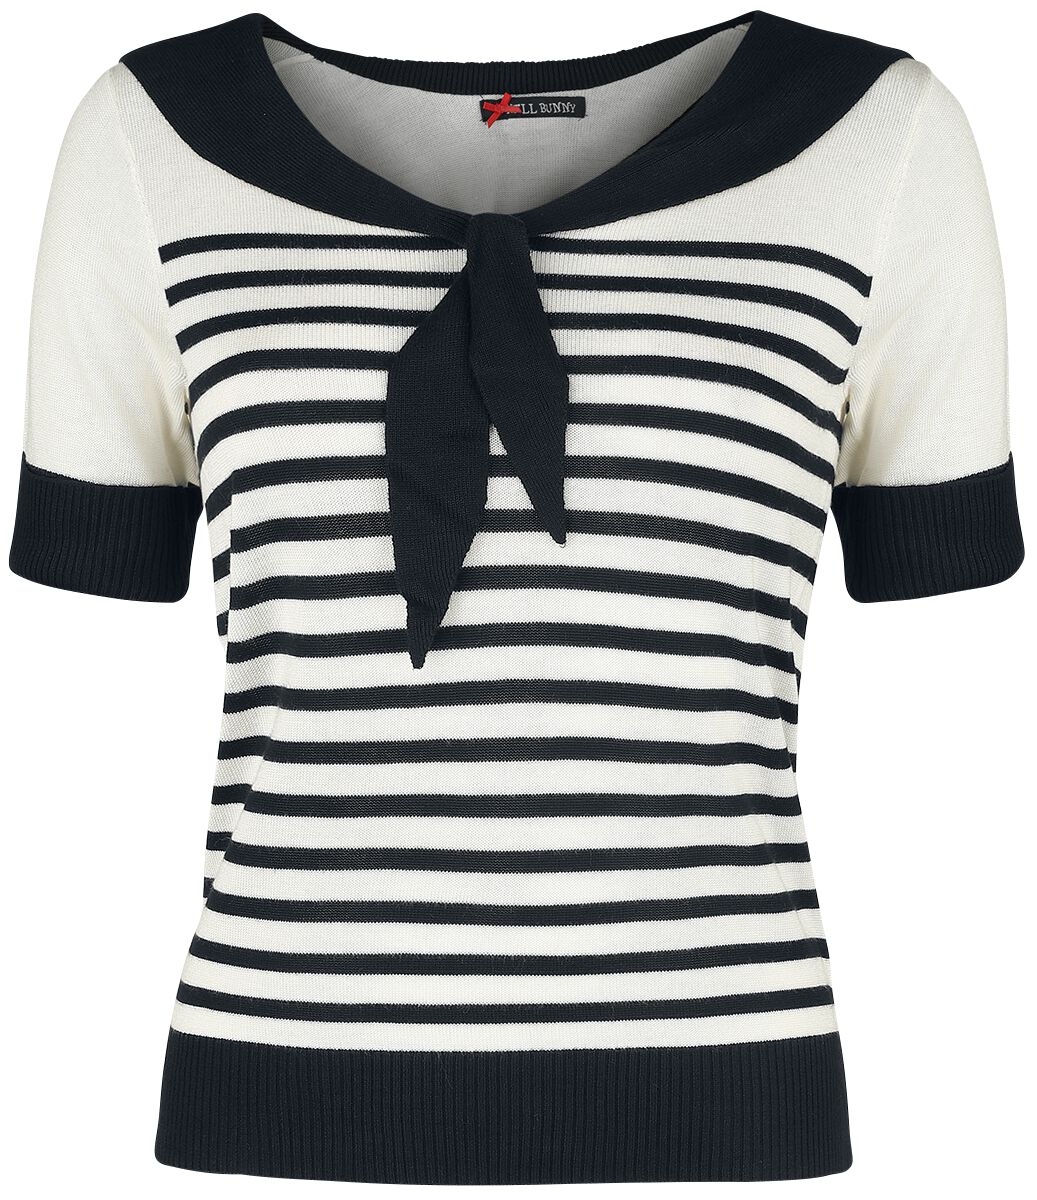 T-Shirt Manches courtes Rockabilly de Hell Bunny - Haut Coco - XS à XL - pour Femme - noir/blanc